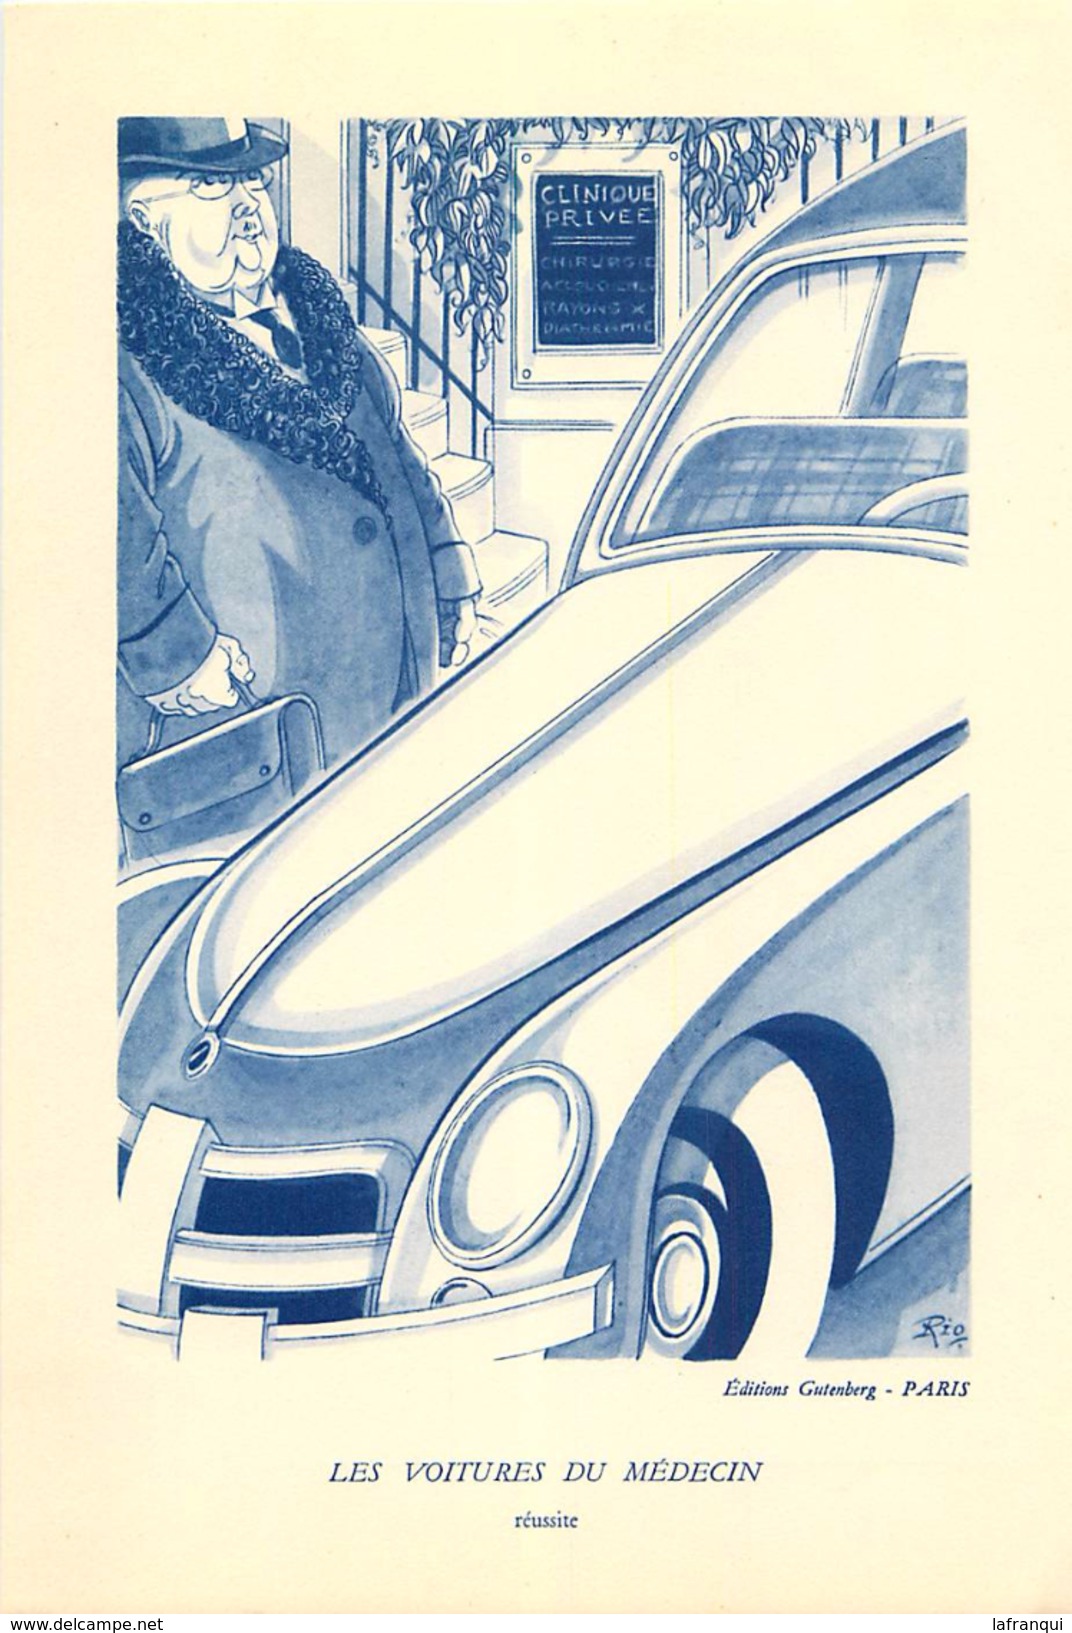 A175- santé medecine -les voitures du medecin - 8 dessins originaux de rio -illustrateur -theme illustrateurs -voitures